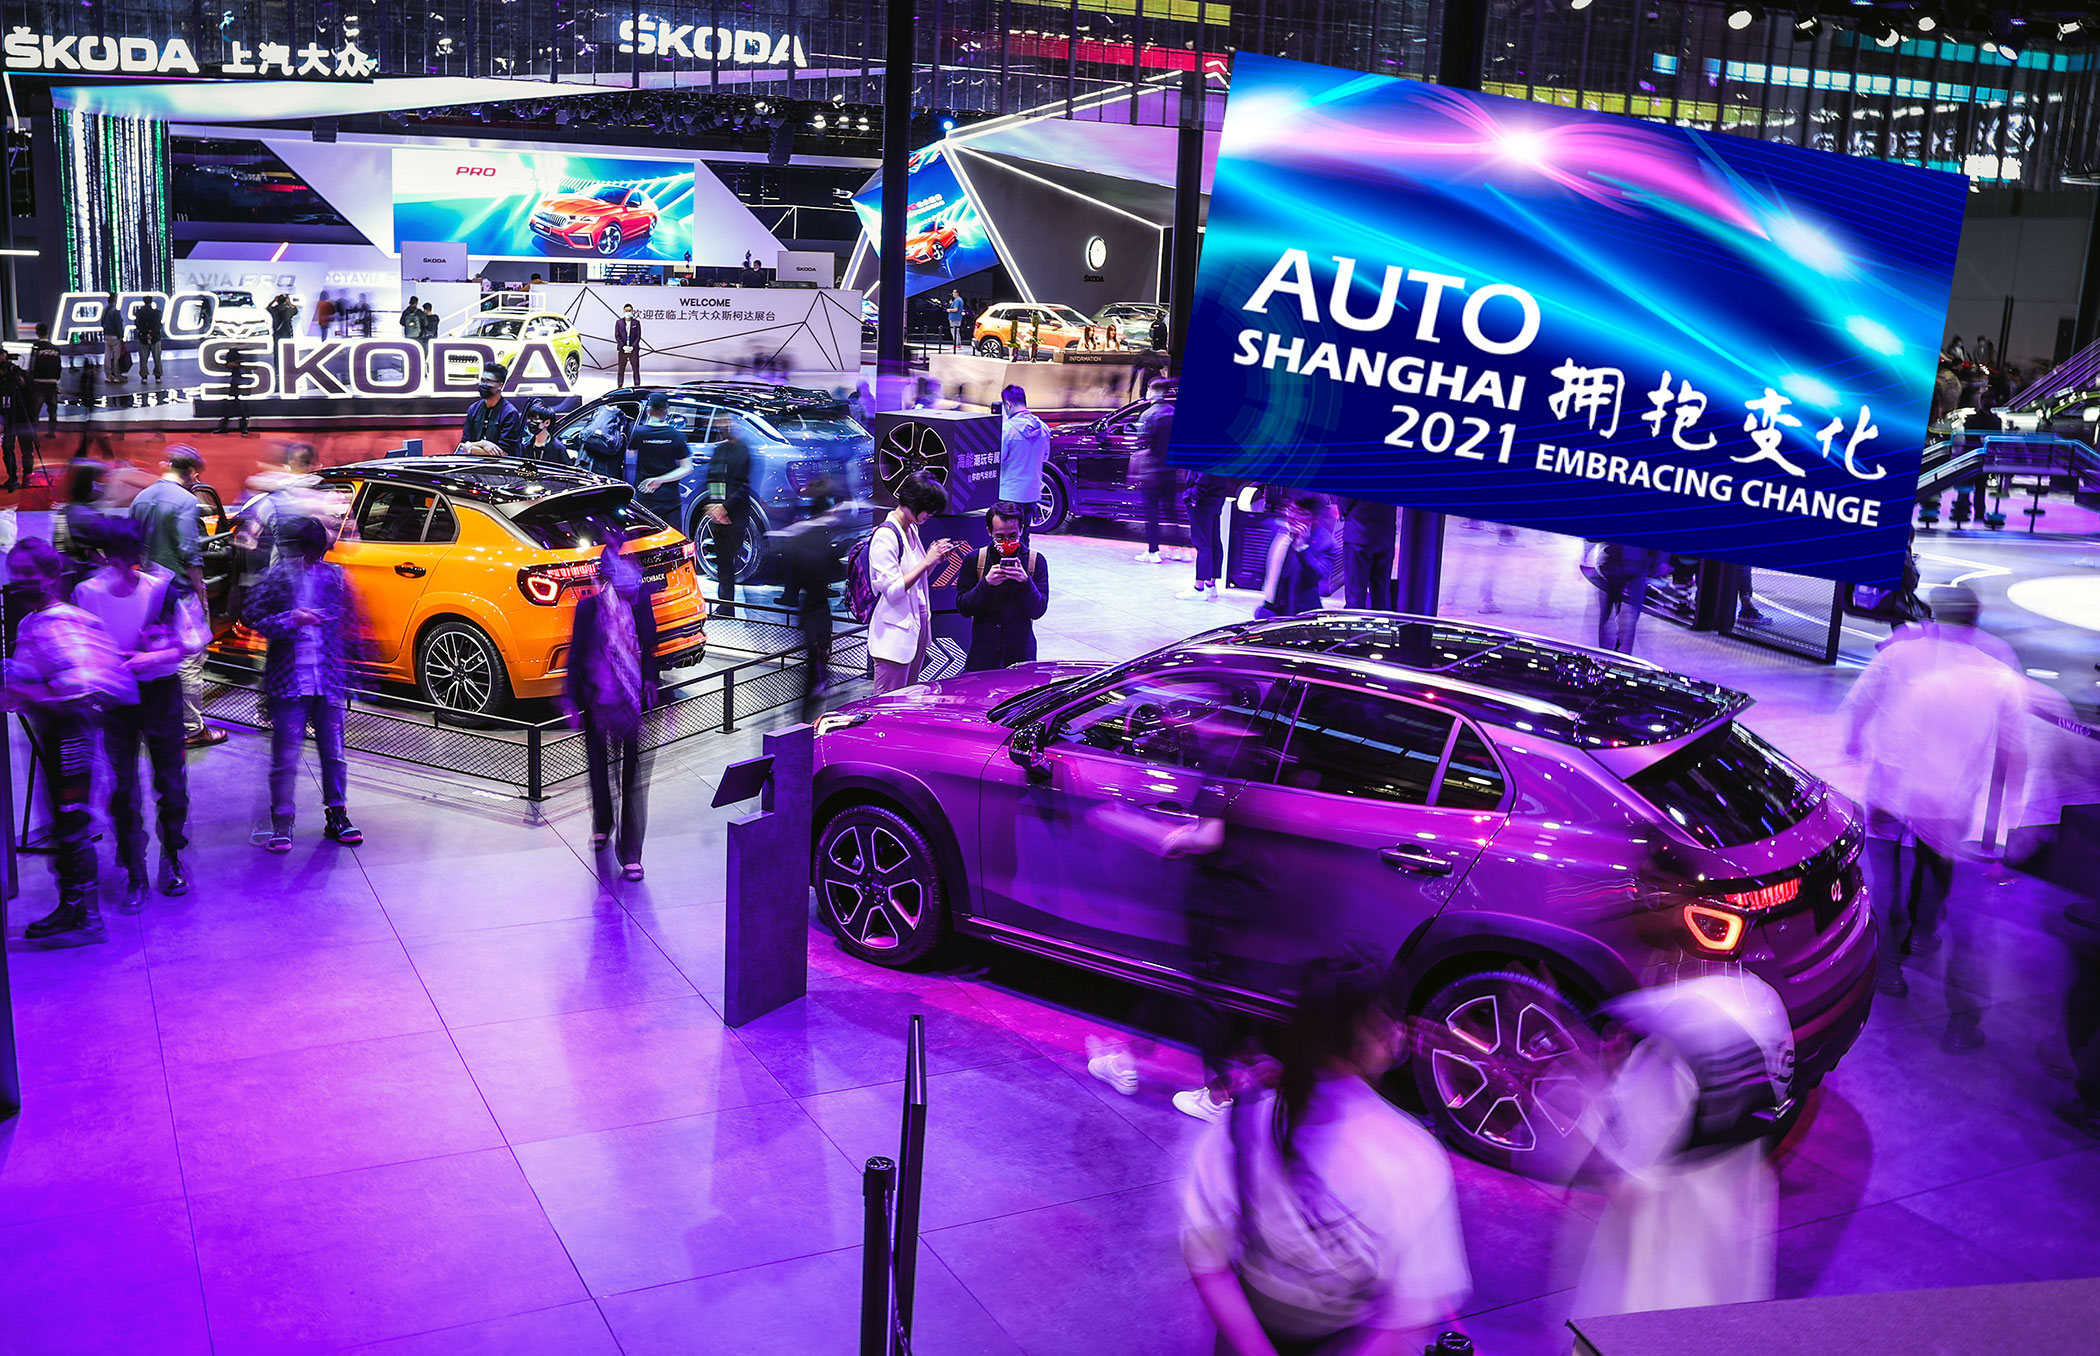 Shanghai Auto Show 2021 se alle de elektriske nyheder og flyvende